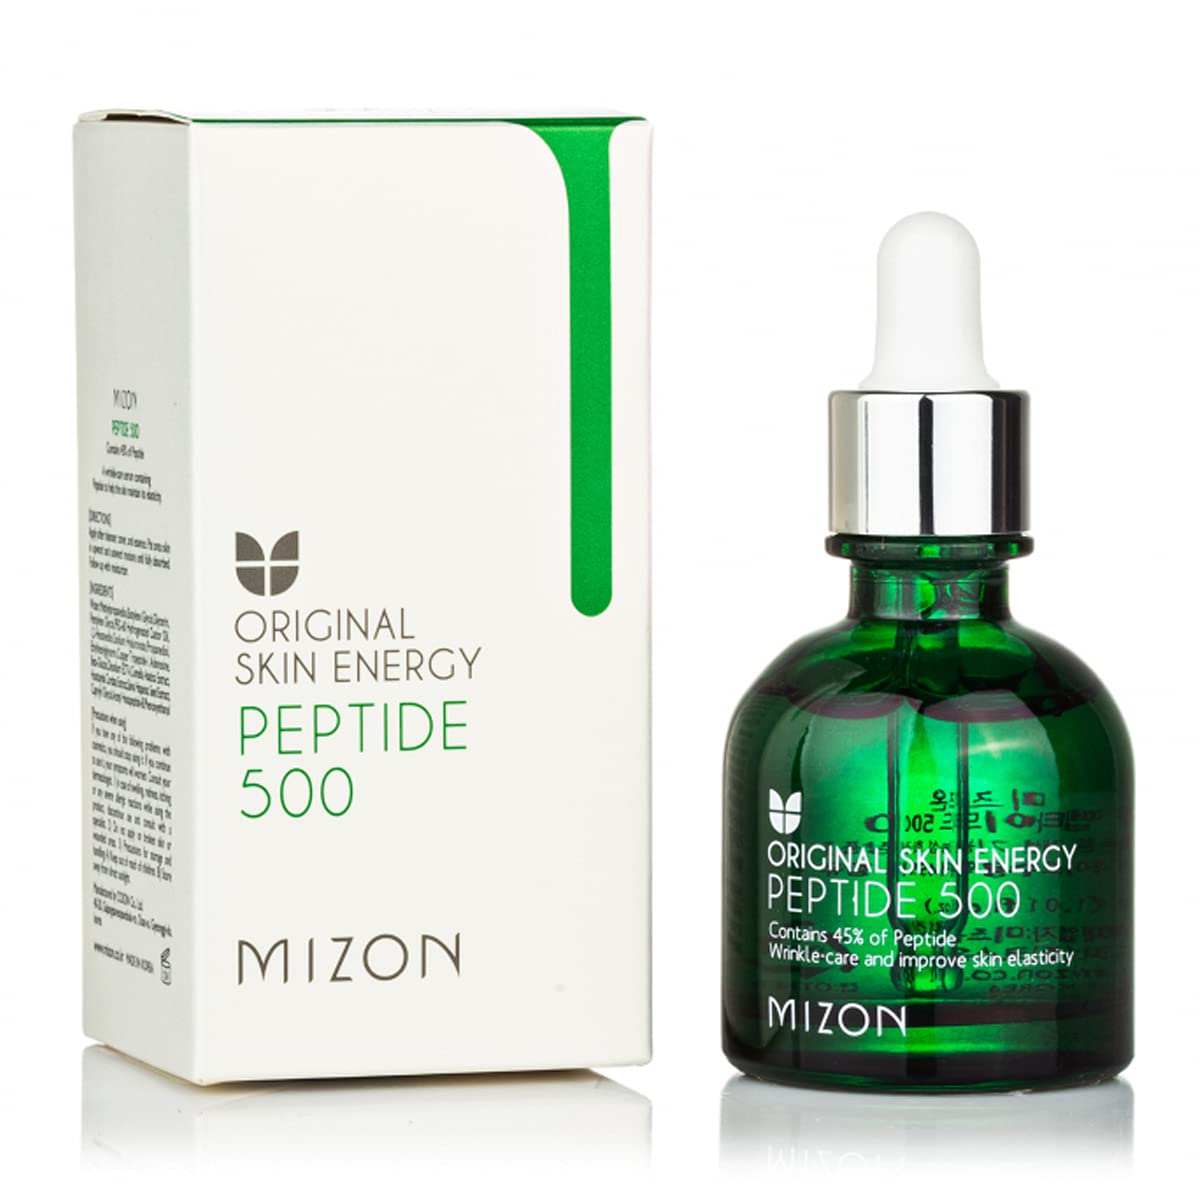 Пептидная антивозрастная сыворотка Mizon Original Skin Energy Peptide 500 - 30 ml